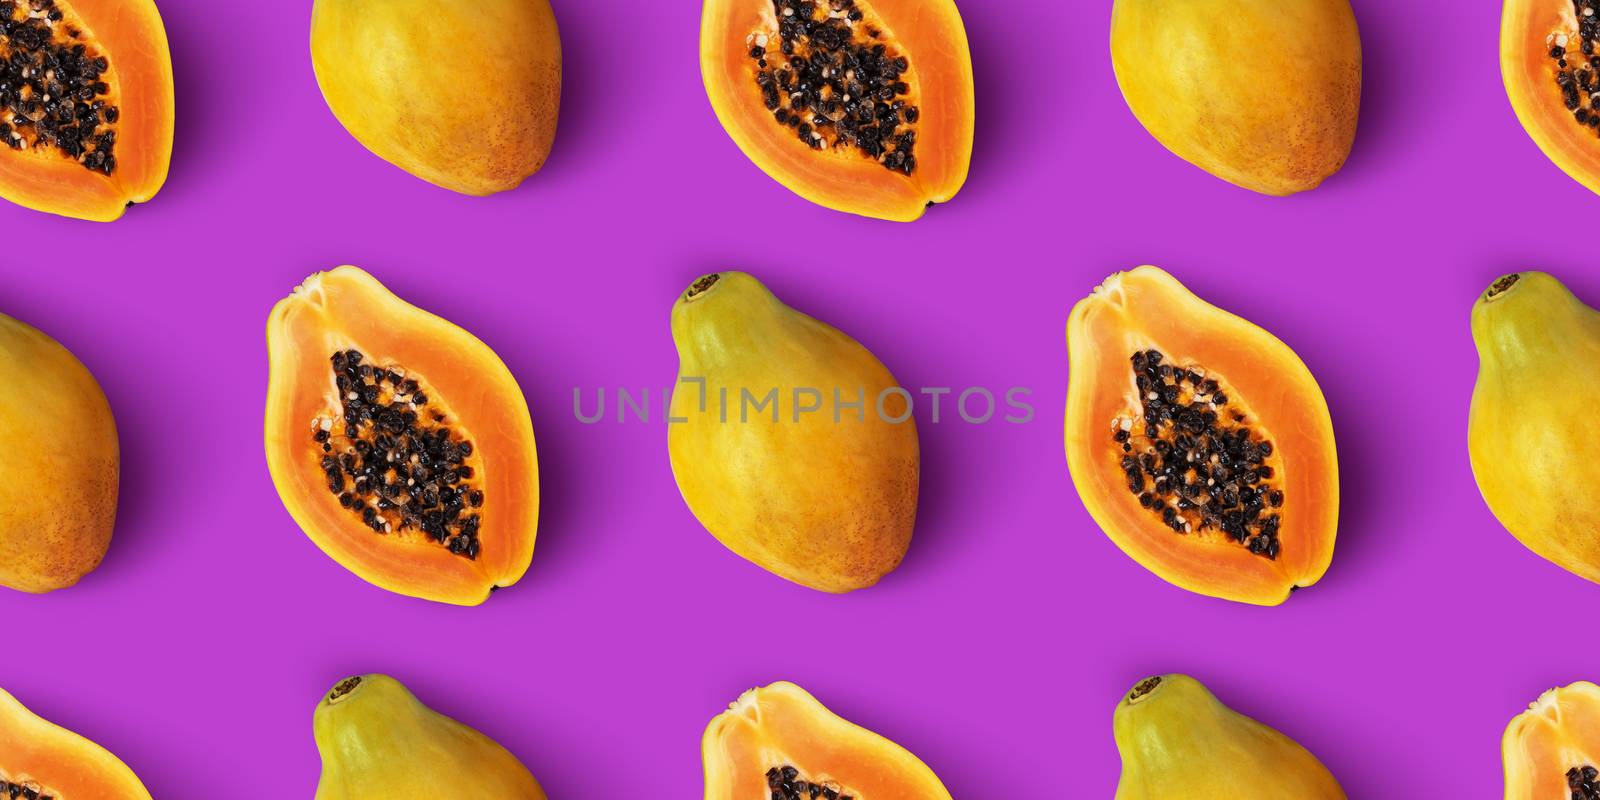 Papaya fruit seamless pattern on purple background, flat lay, top view